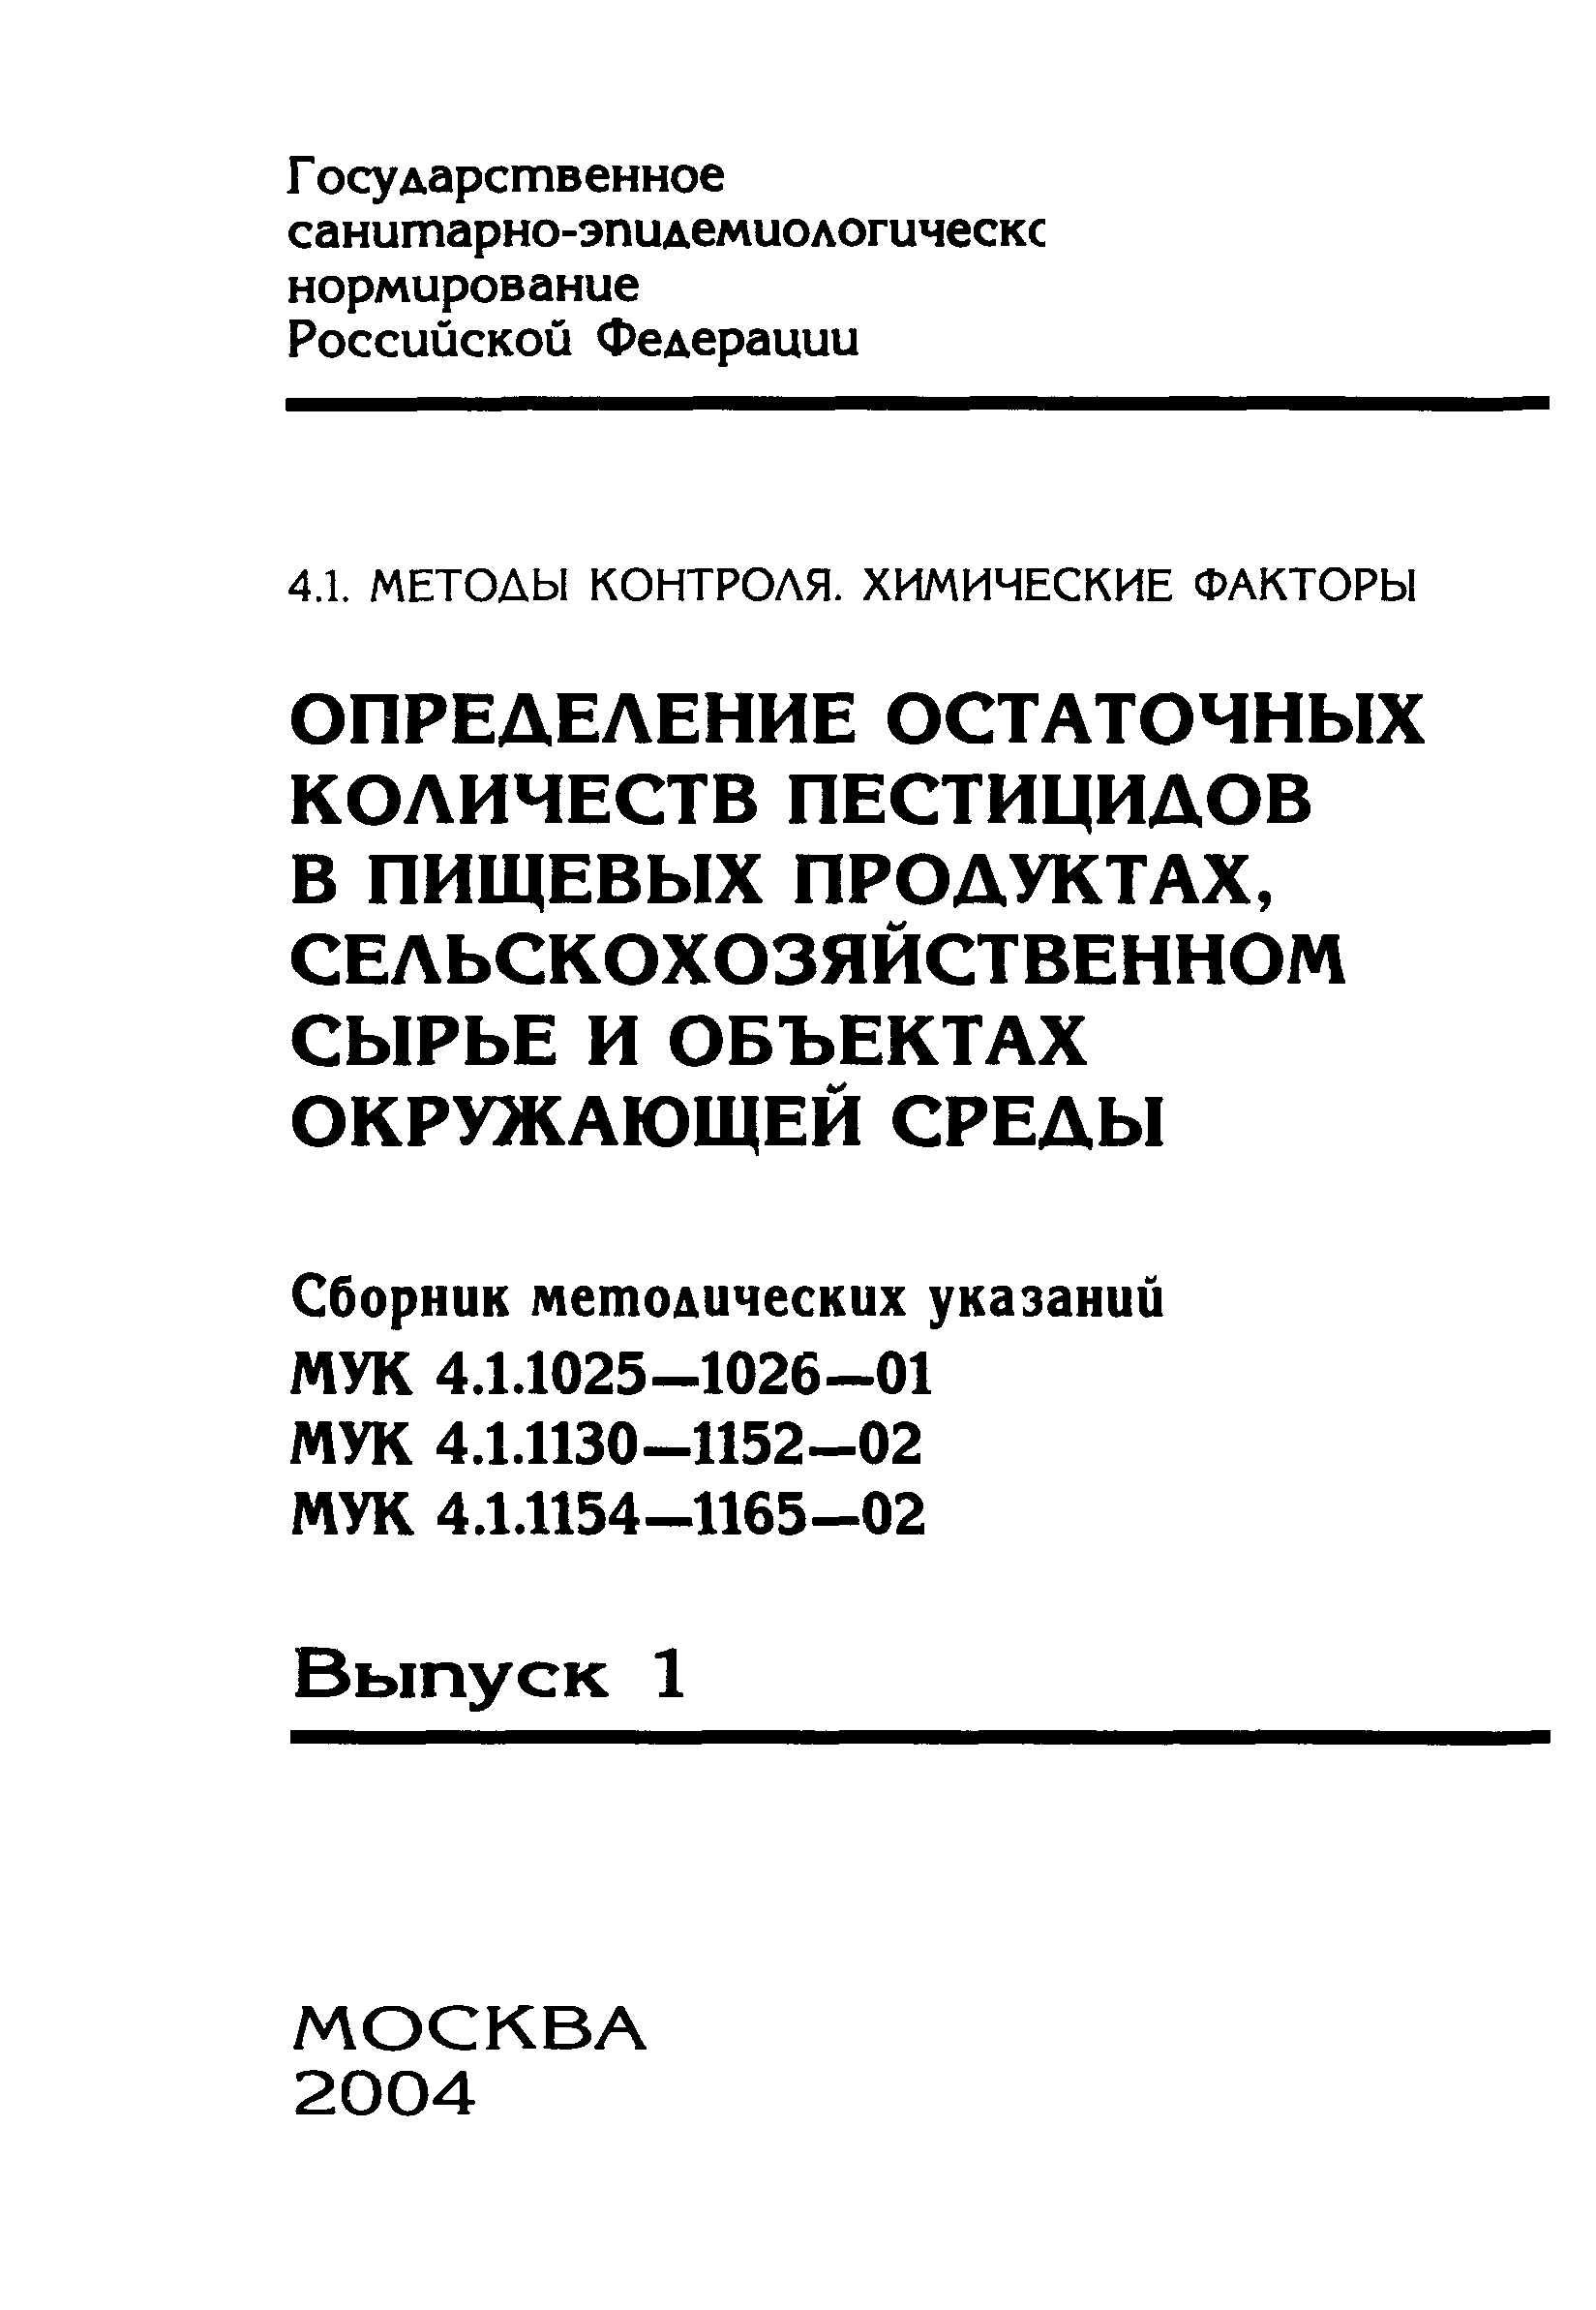 МУК 4.1.1164-02